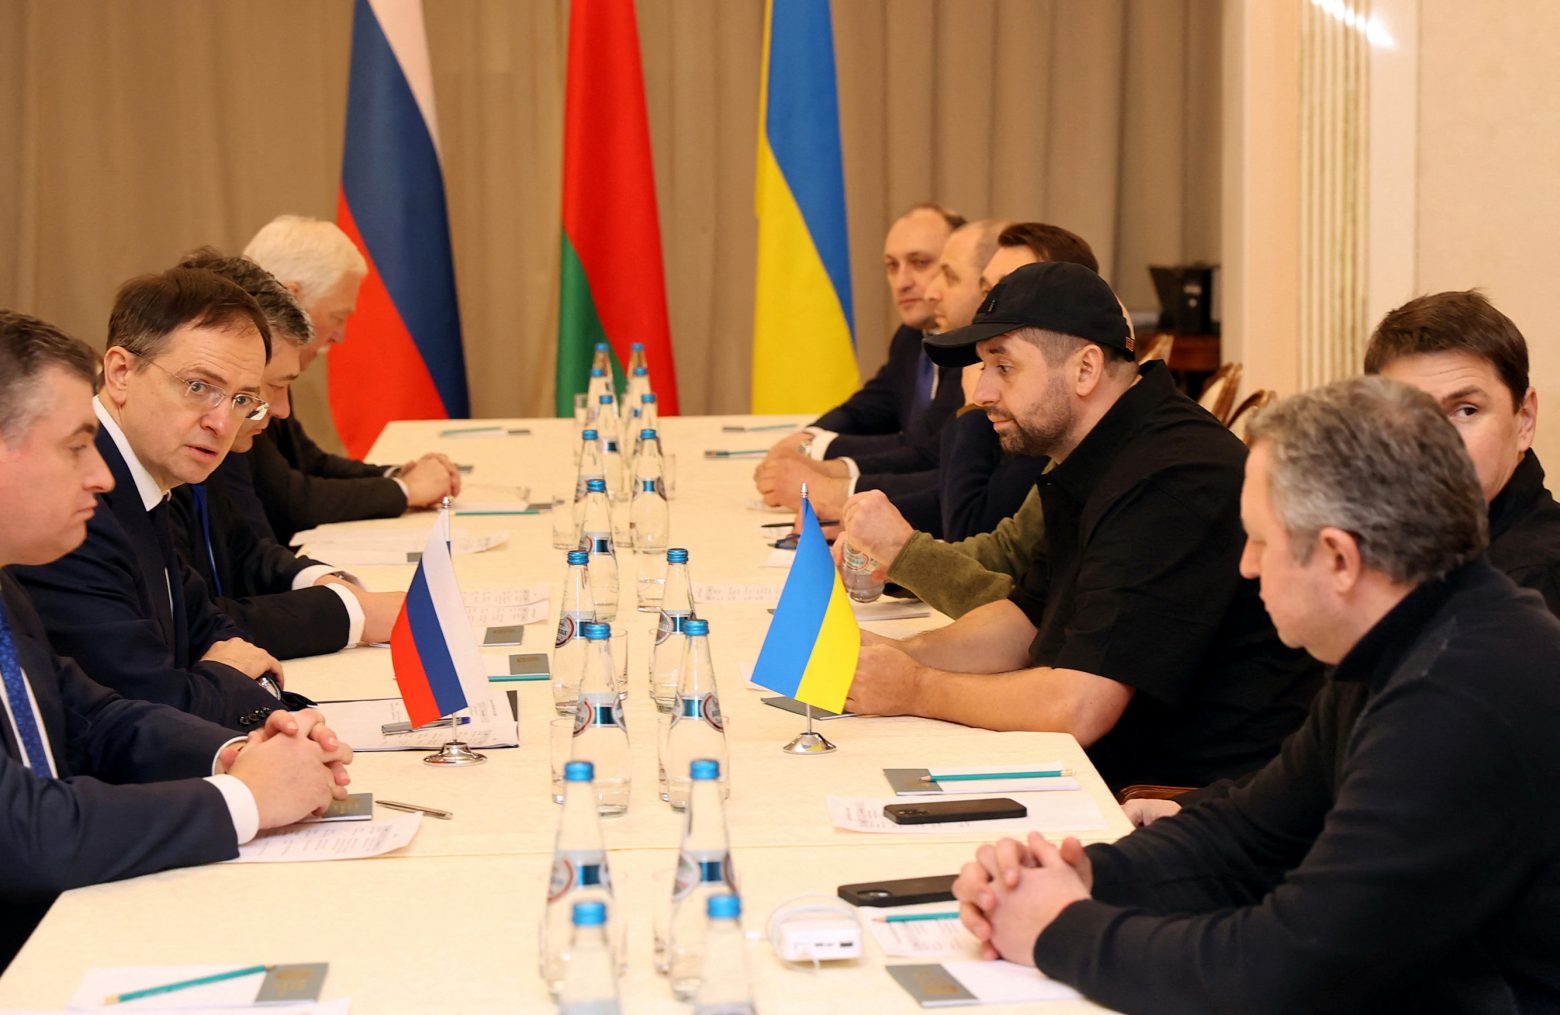 Πόλεμος στην Ουκρανία: Ολοκληρώθηκαν οι συνομιλίες Κιέβου – Μόσχας – Γιατί γυρίζουν στις πατρίδες τους